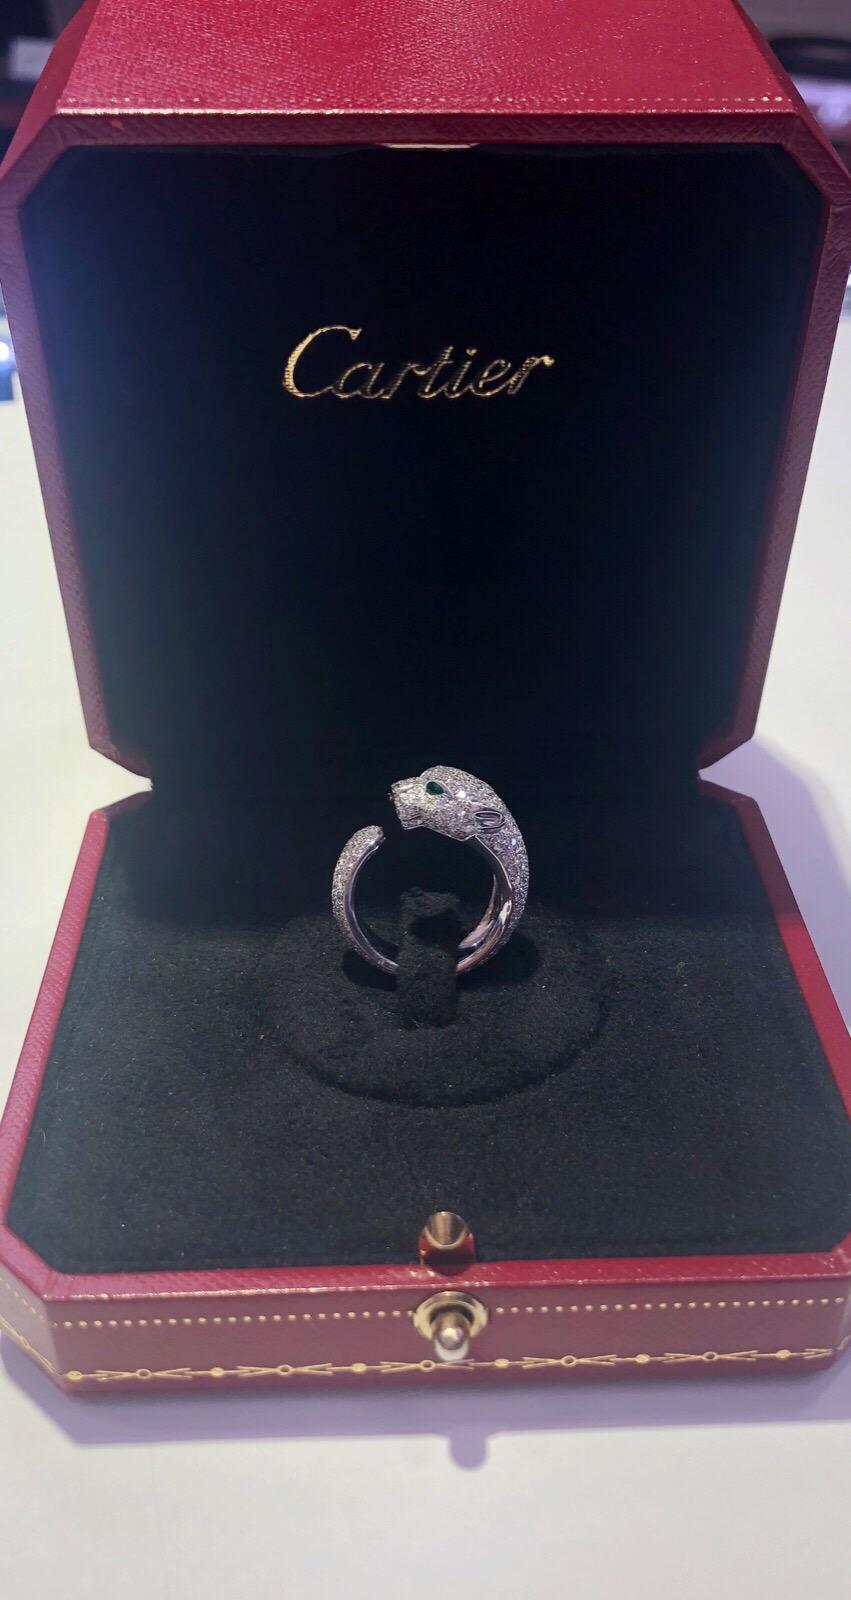 Cartier Panthere Ring with 2.39 Carat Diamonds, 18 Karat White Gold 2